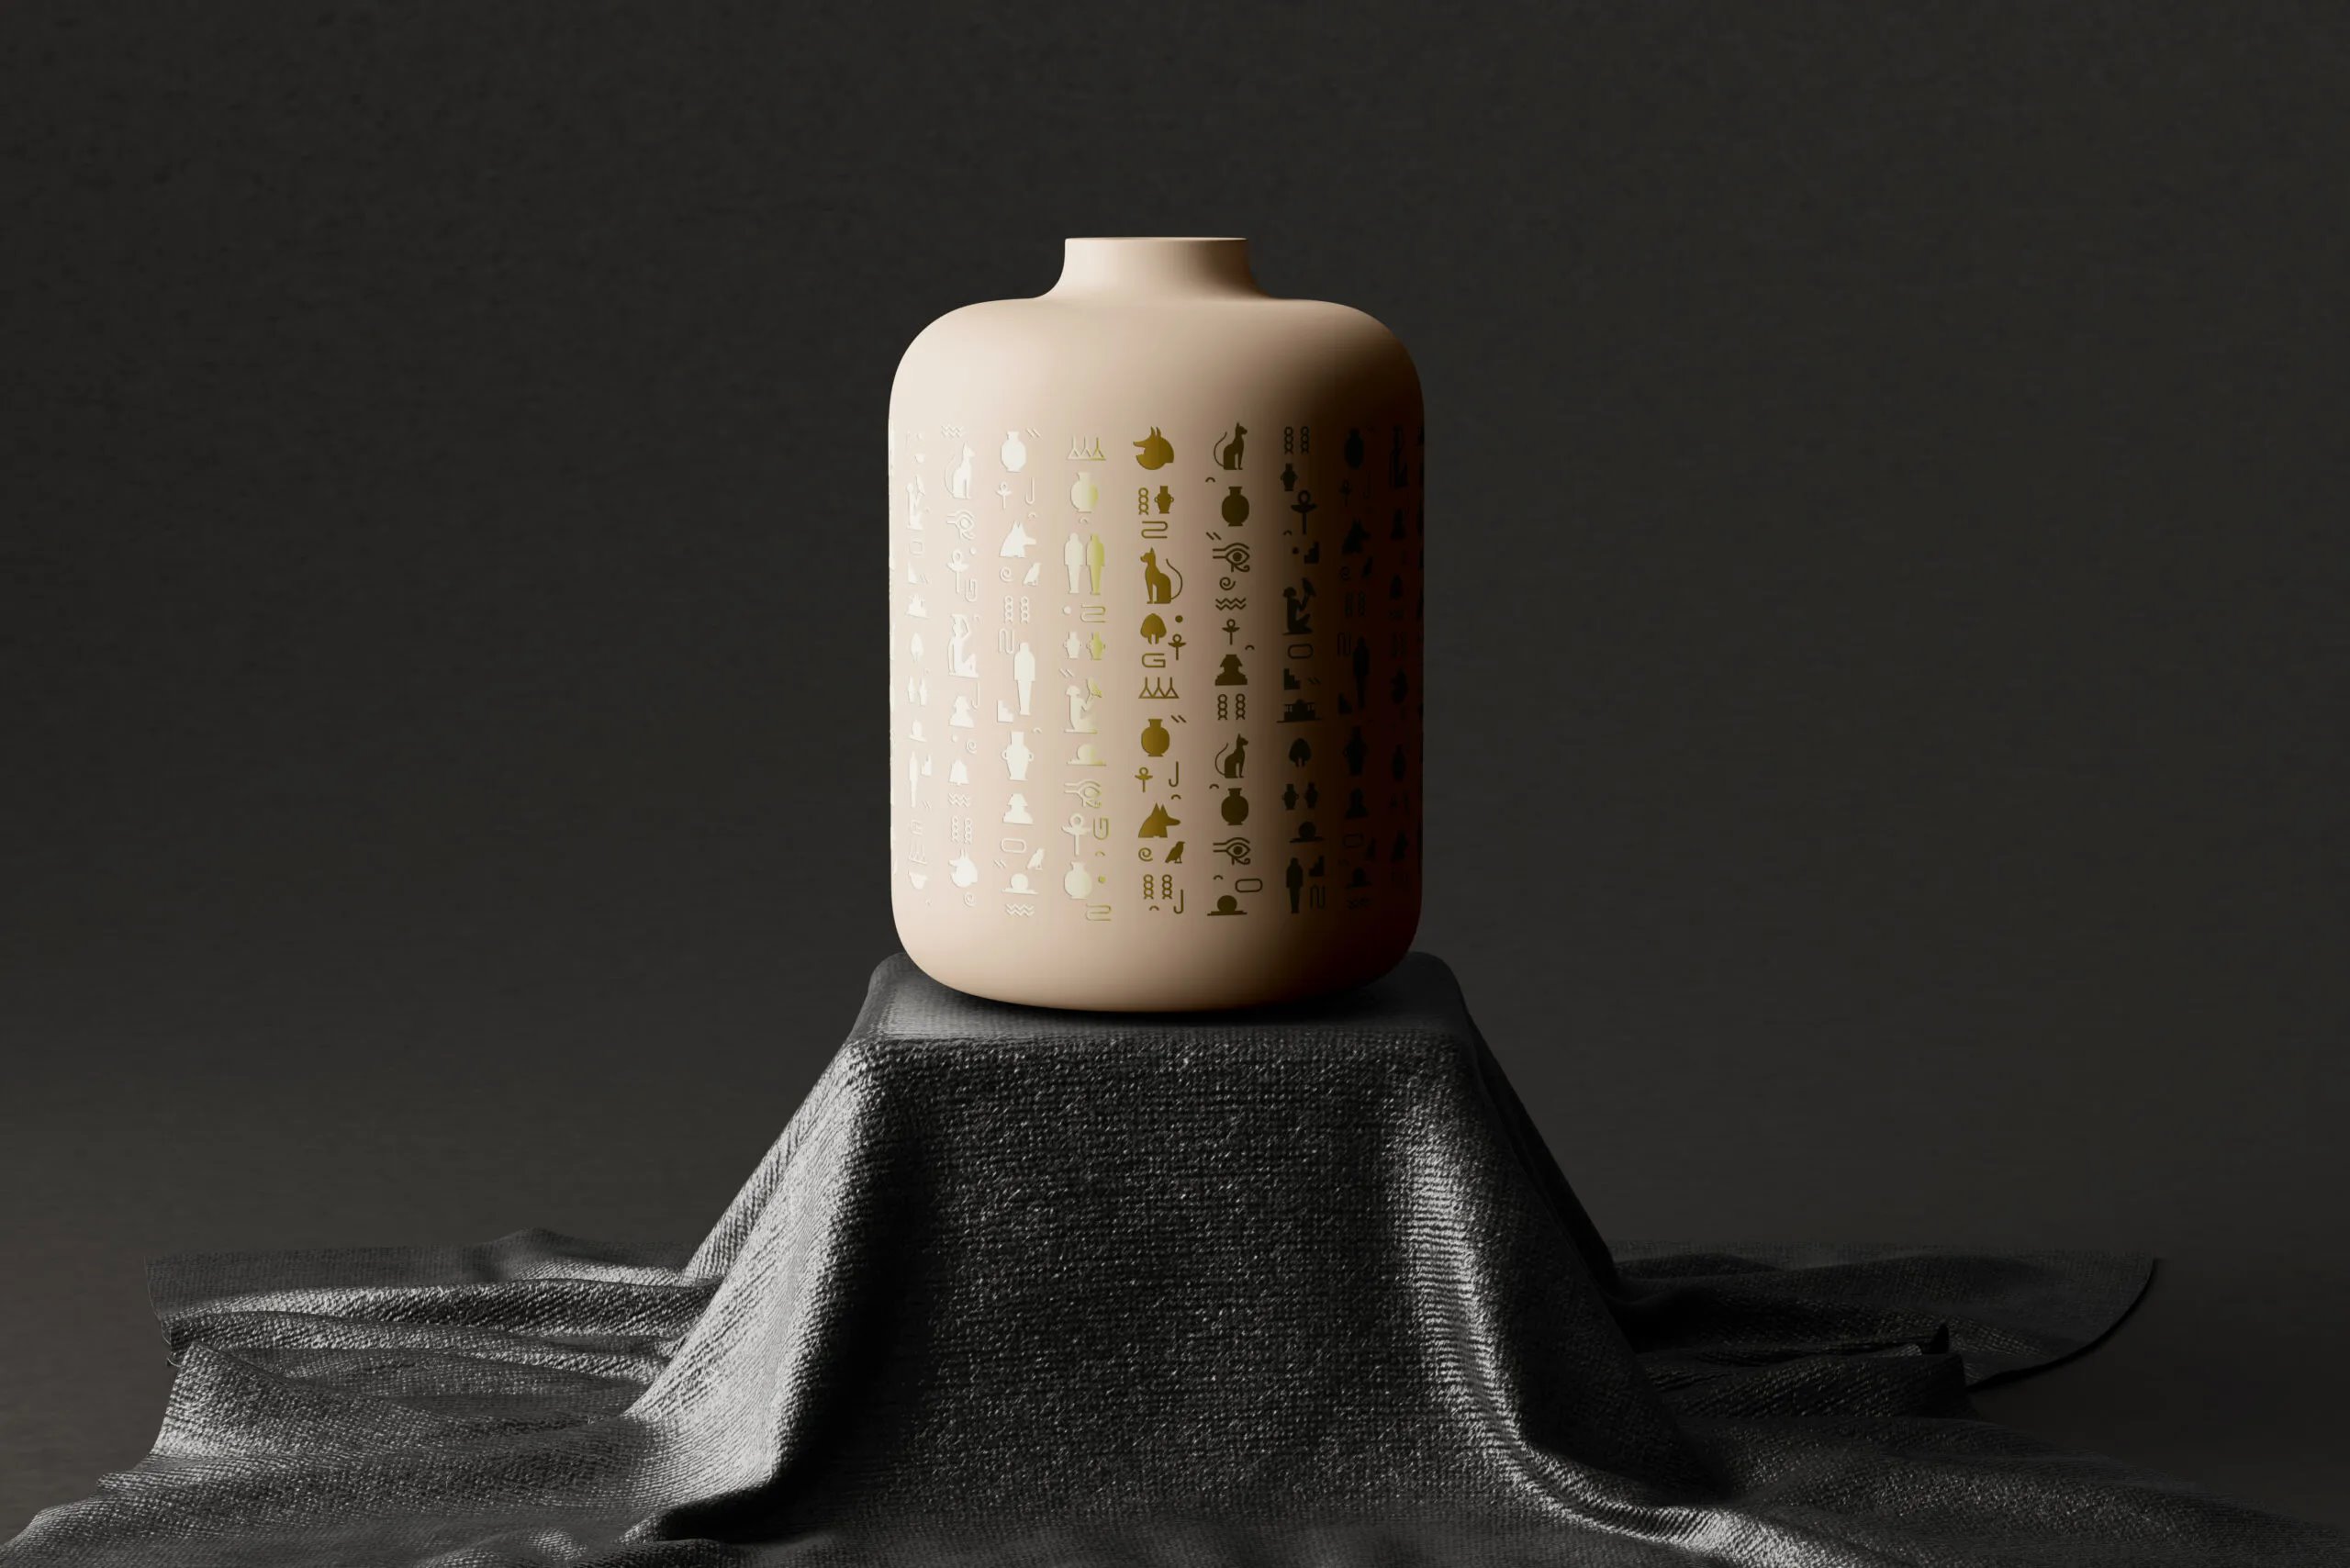 8 Ceramic Vase Mockups in Distinct Sights FREE PSD